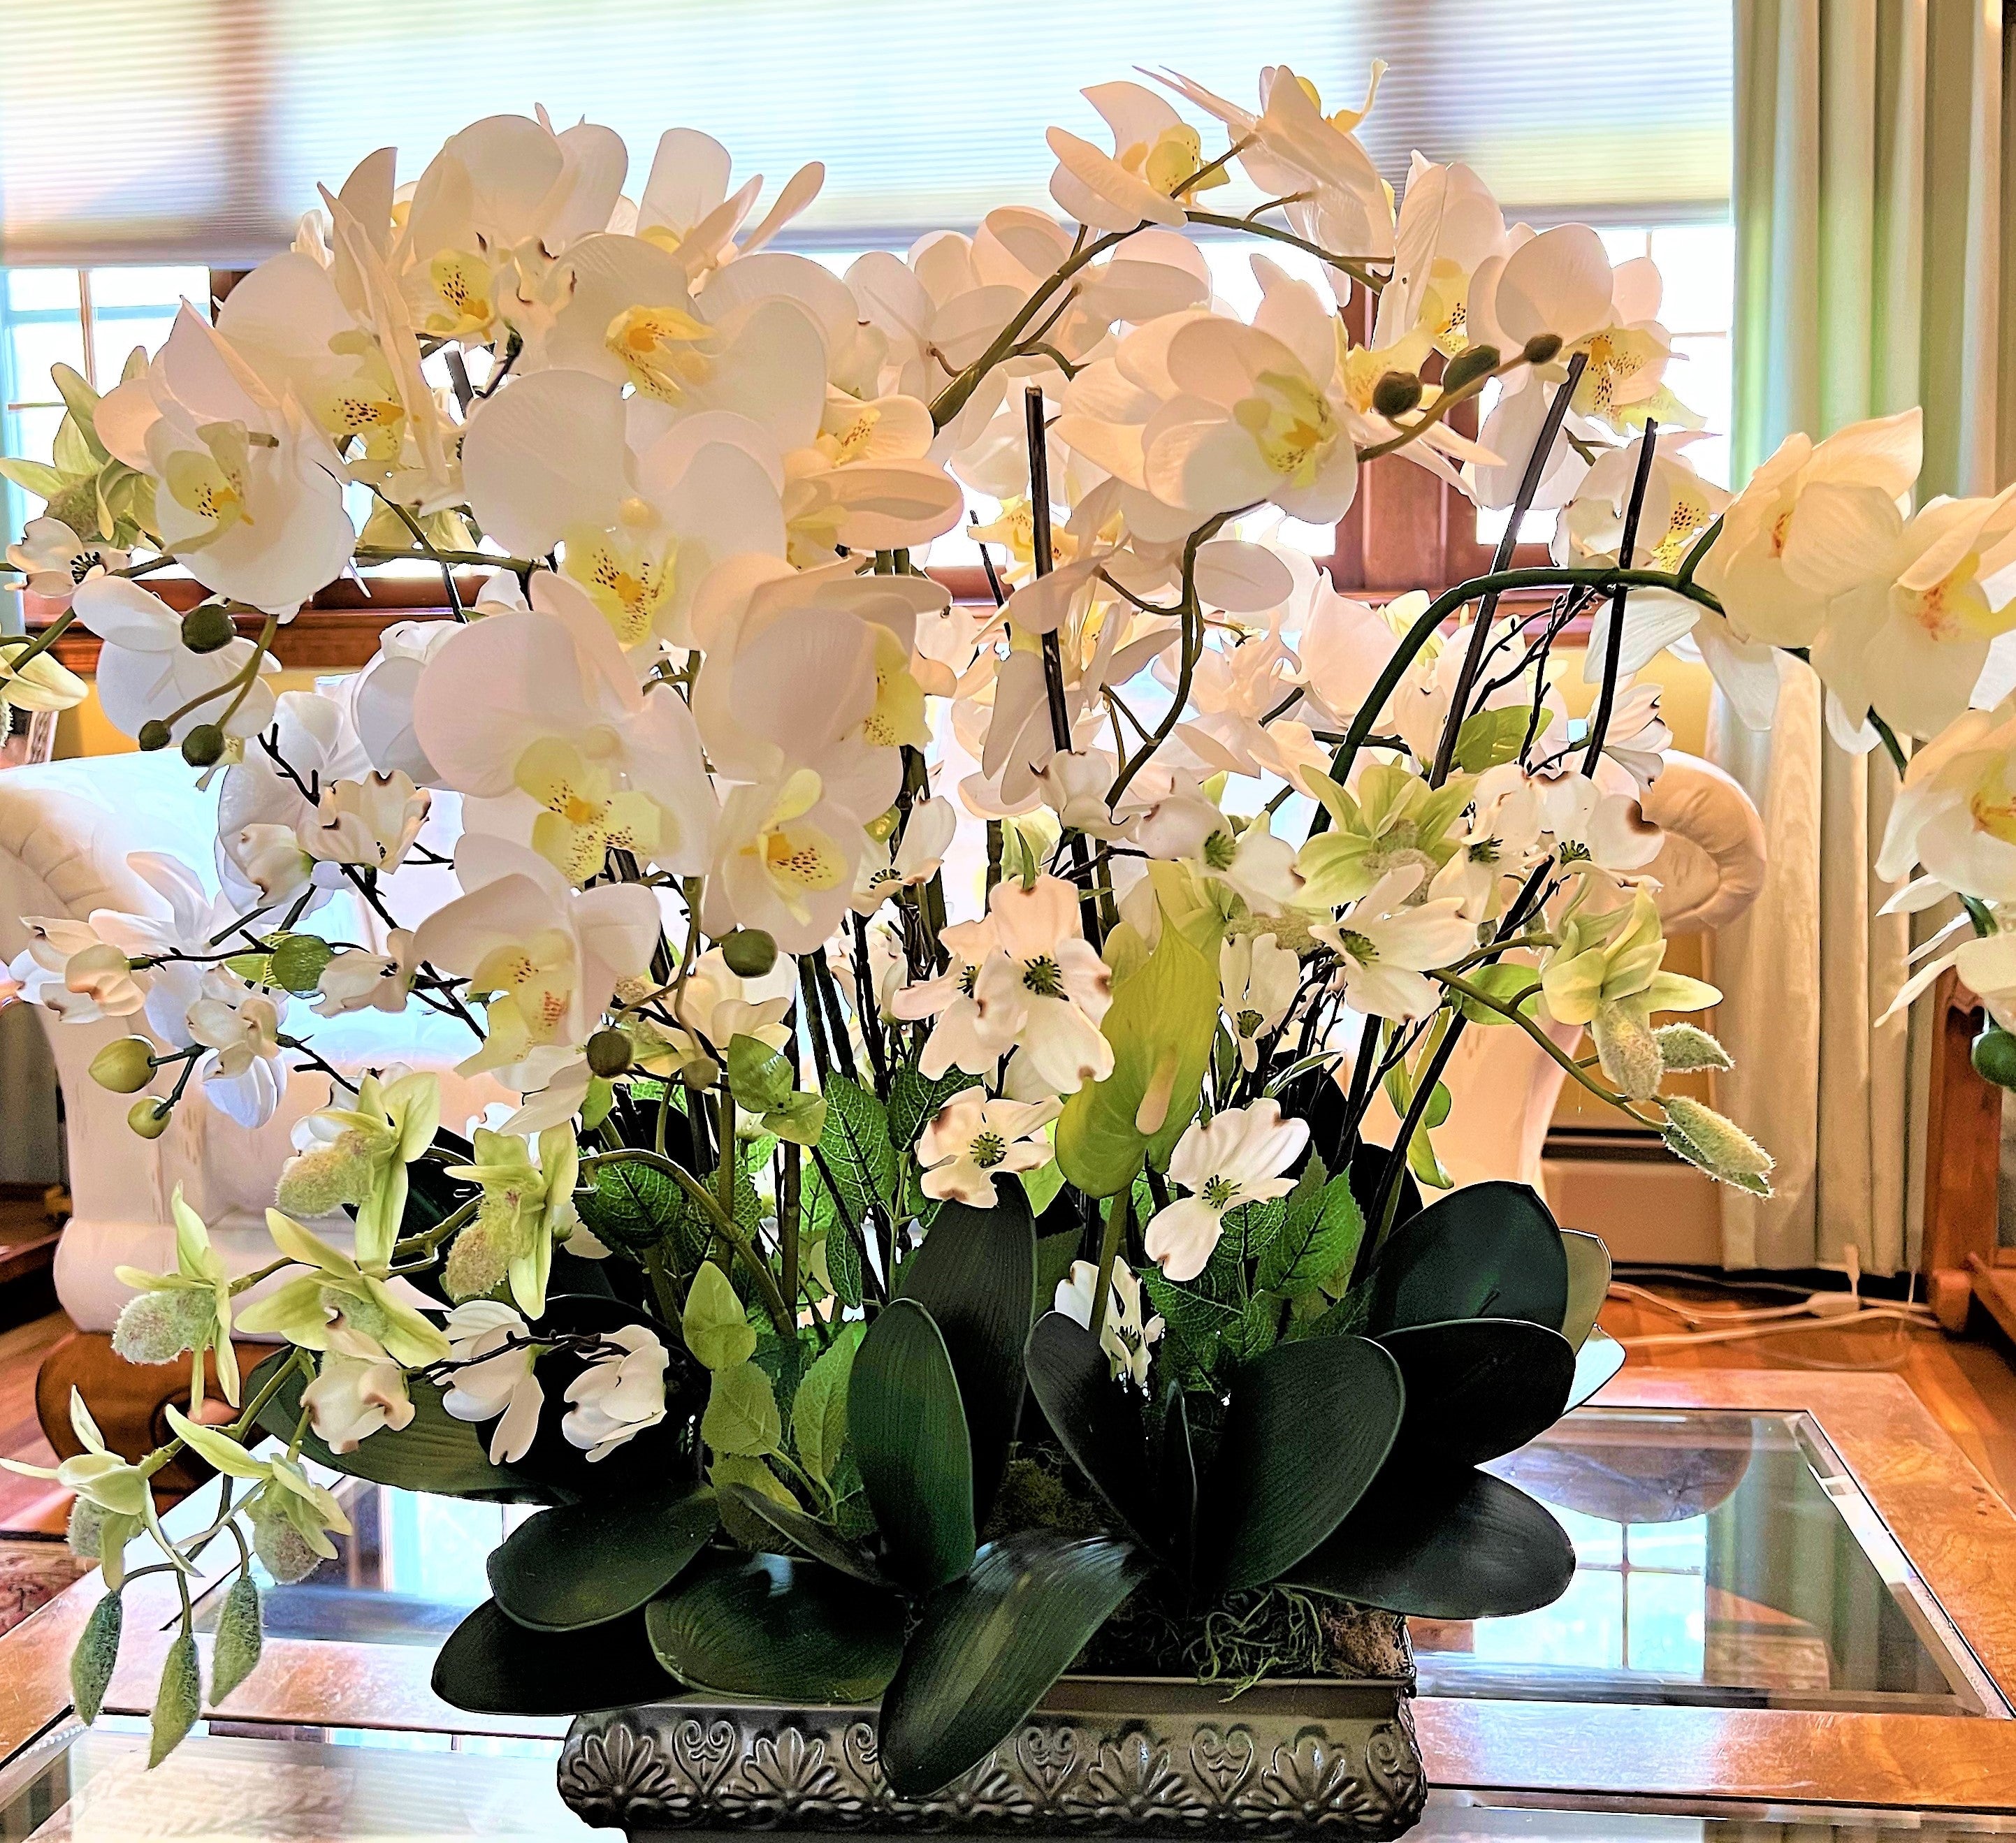 Centerpiece- Exotic & Graceful Orchid Centerpiece, 26"H X 30W X12" Vase